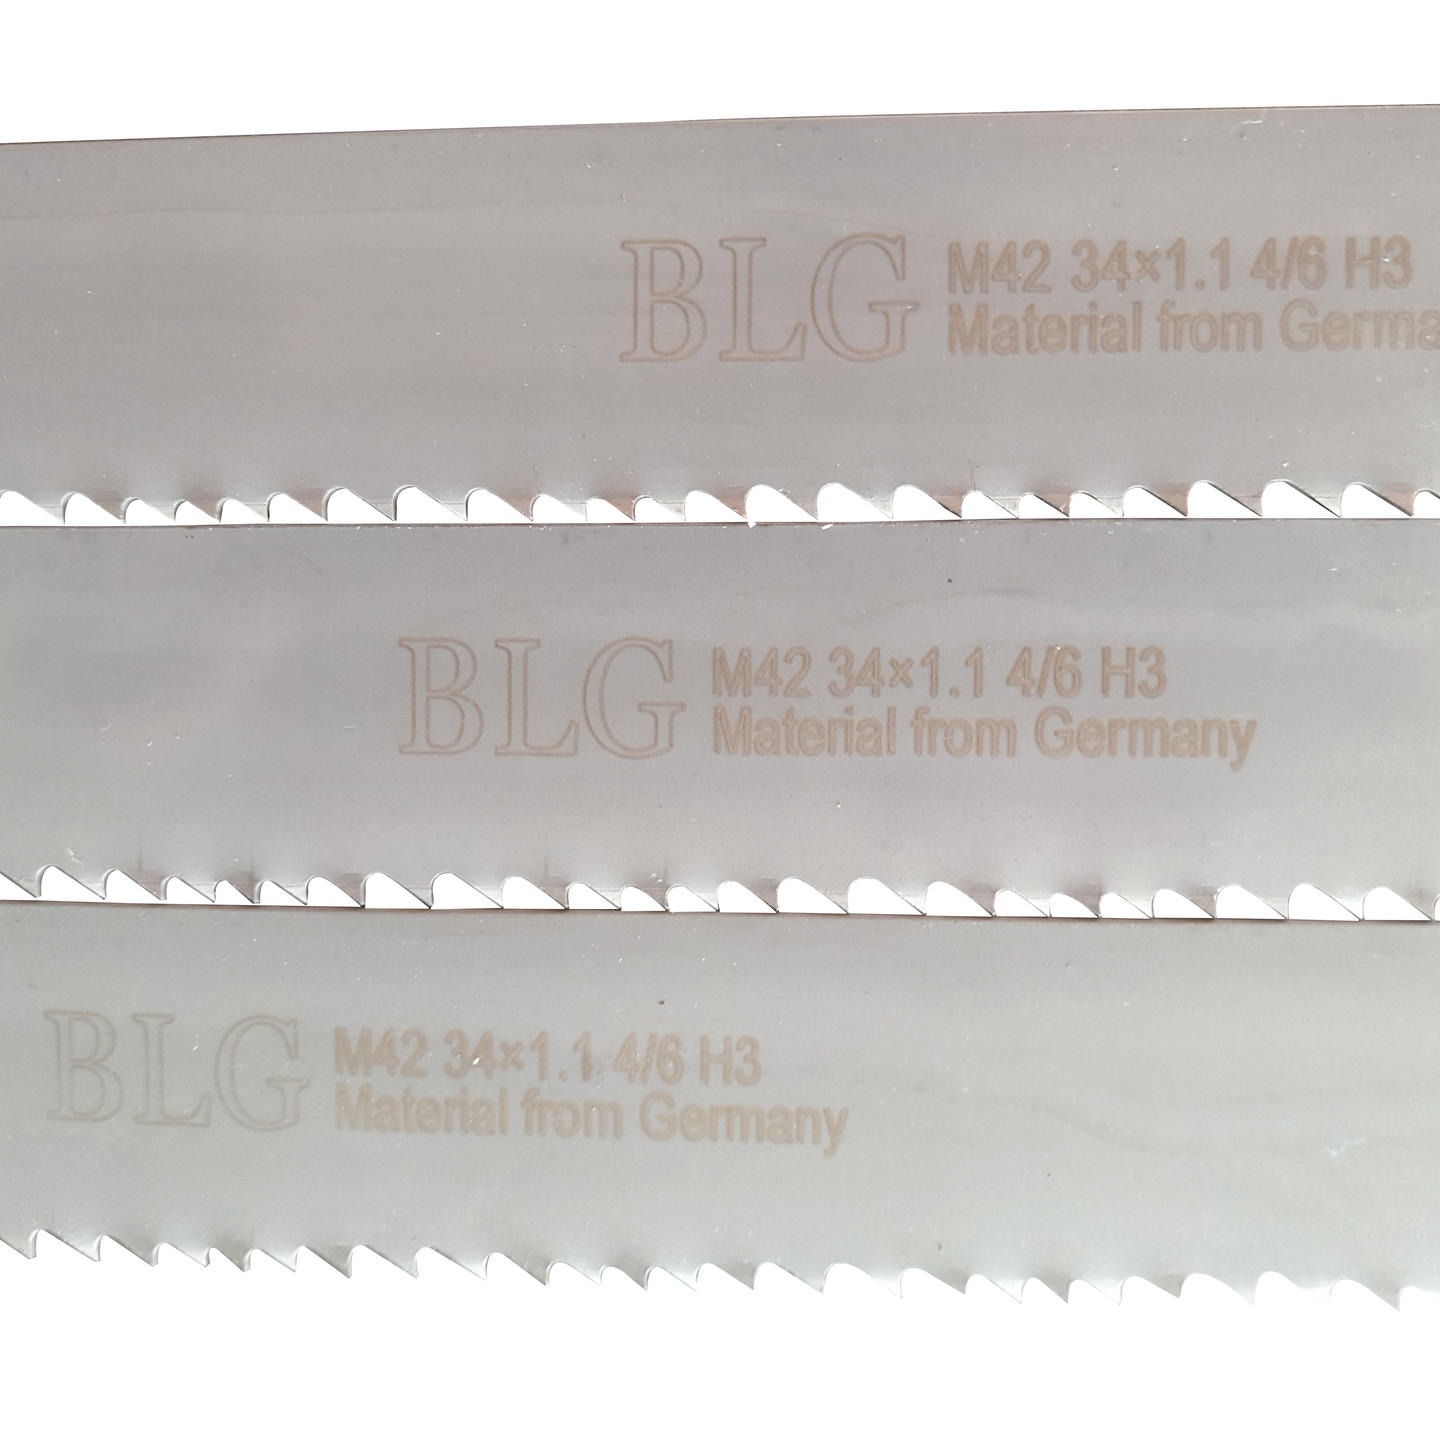 济南贝立格机械厂家直销 BLG34宽  BLG 34-1.1 4-6H3 带锯条 品质可靠  欢迎订购